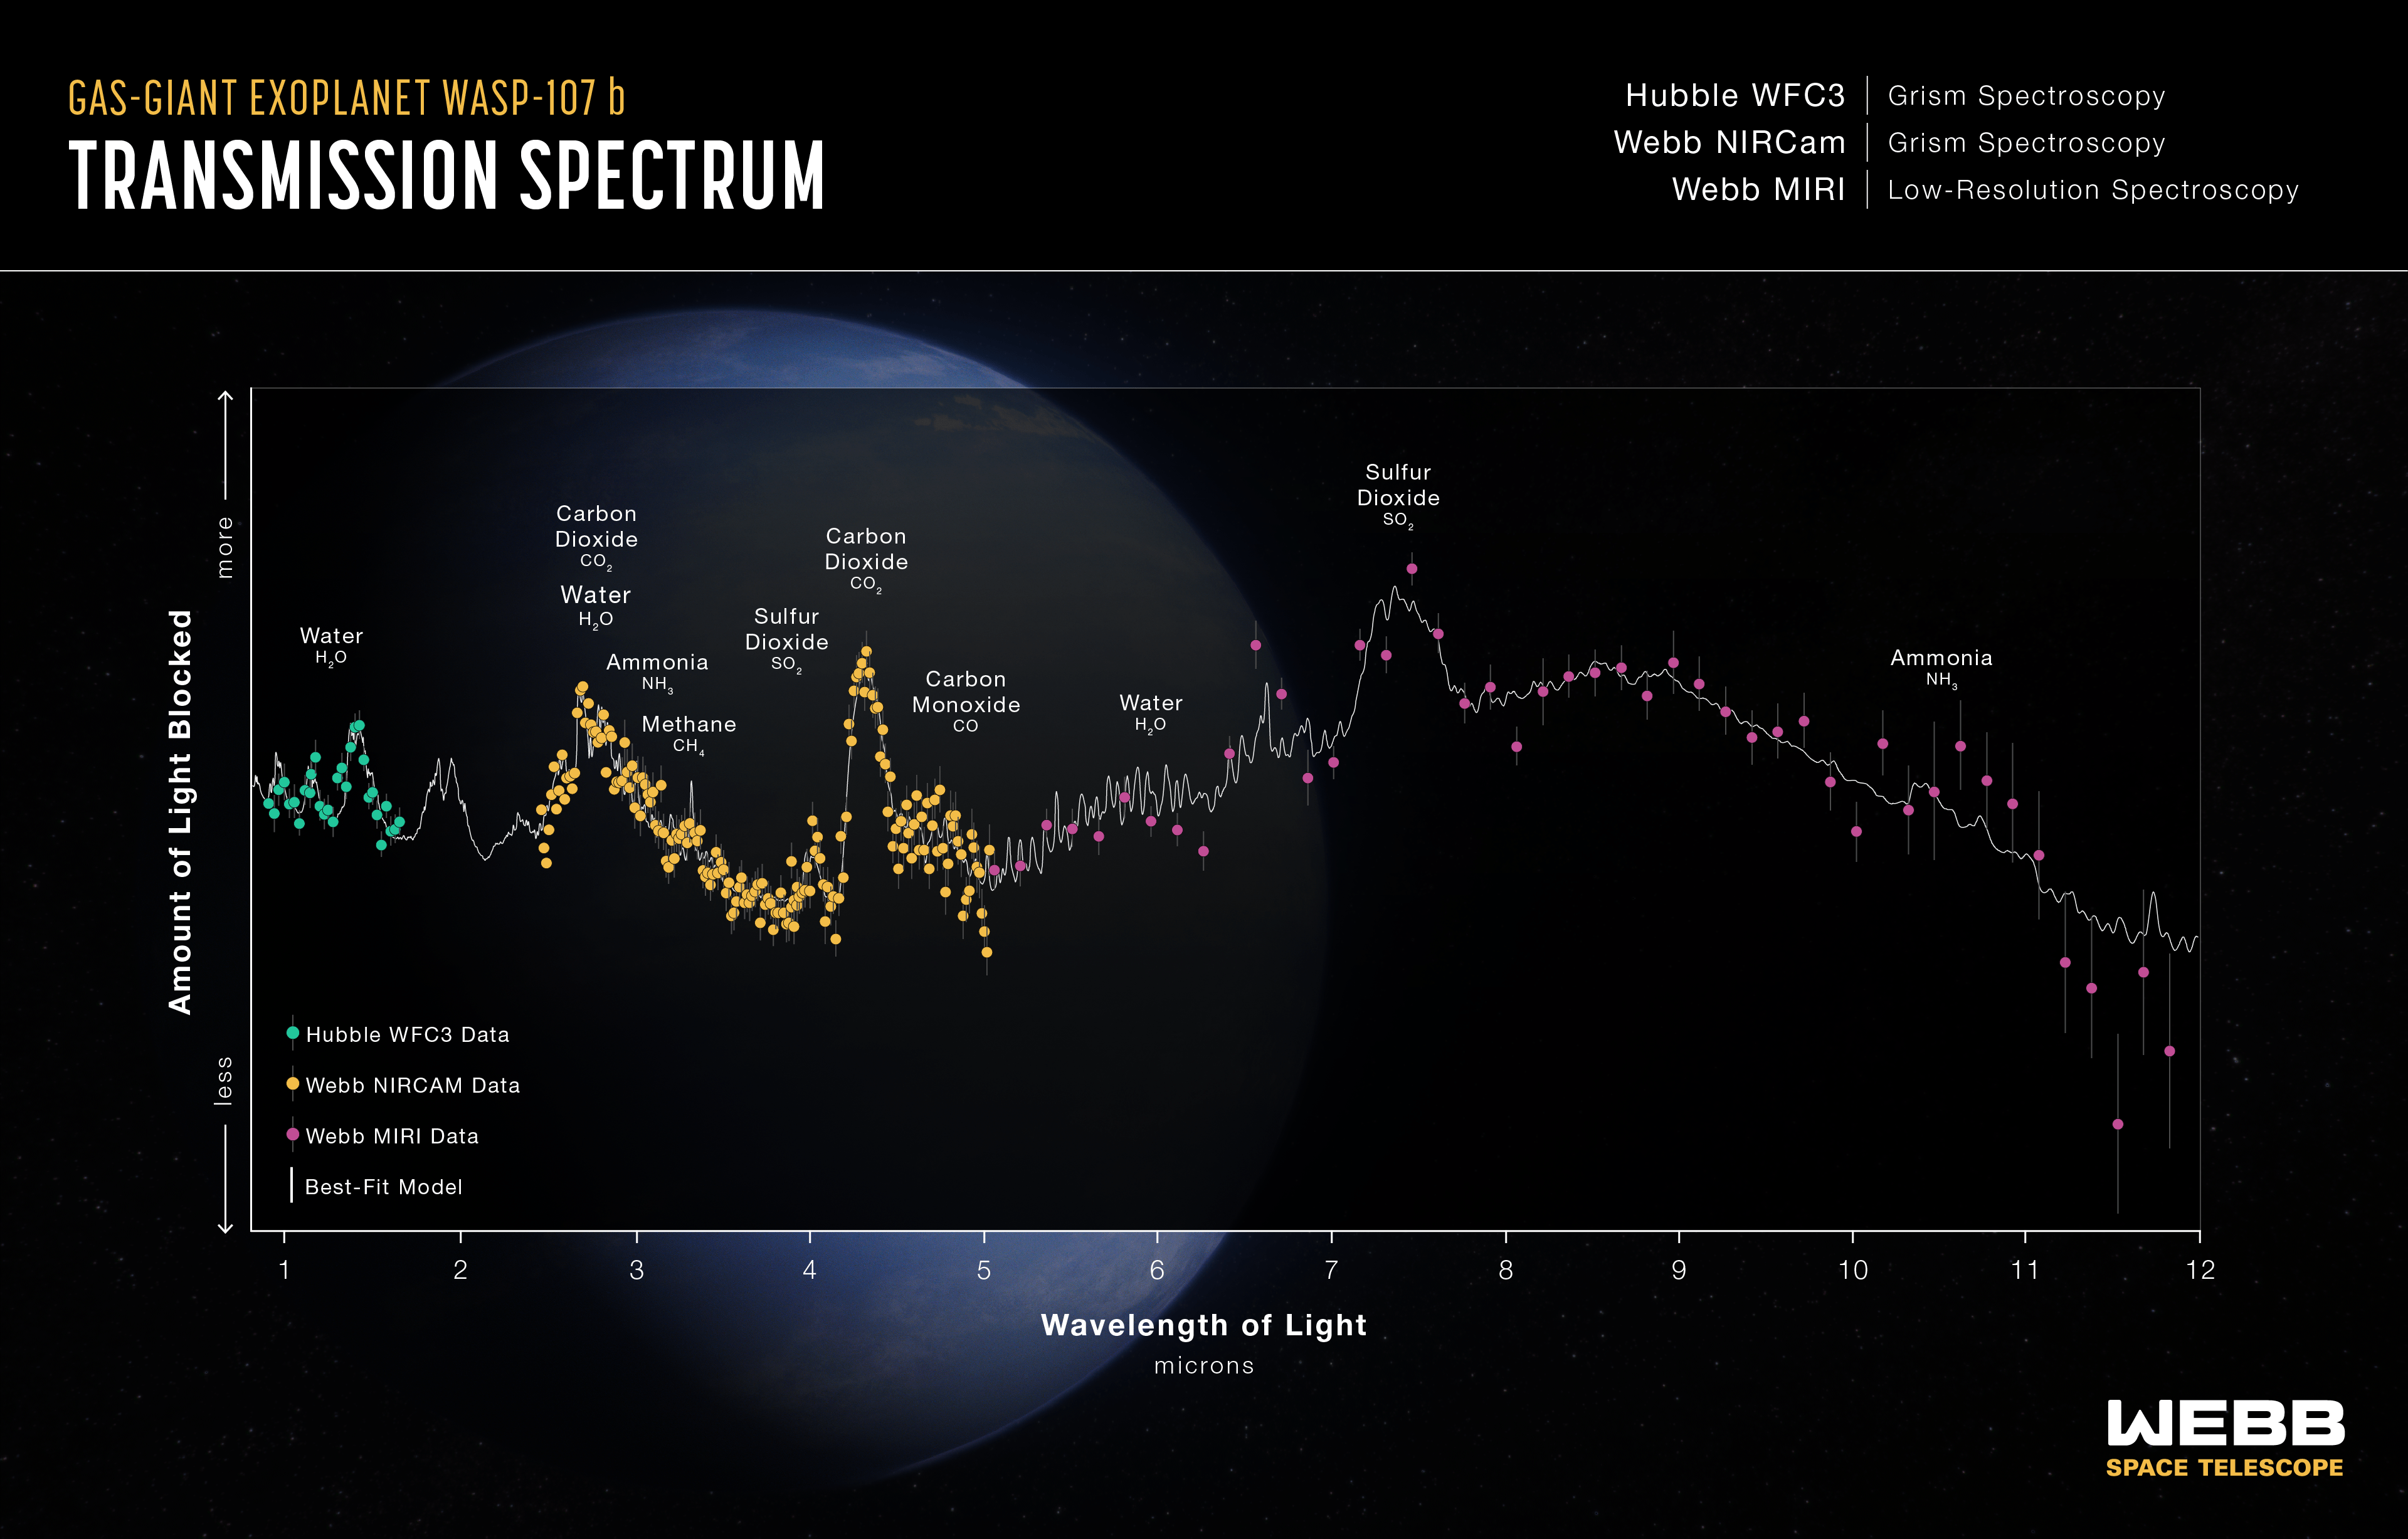 Gráfico titulado "Espectro de transmisión del exoplaneta gigante gaseoso caliente WASP-107 b: espectroscopía de grisma WFC3 del Hubble; Espectroscopía de Grisma Webb NIRCam; Webb MIRI Low-Resolution Spectroscopy" tiene 3 conjuntos de puntos de datos con barras de error y un modelo de mejor ajuste en un gráfico de Cantidad de luz bloqueada en el eje Y frente a Longitud de onda de la luz en micras en el eje X. El eje Y varía desde menos luz bloqueada en la parte inferior hasta más luz bloqueada en la parte superior. El eje X oscila entre 0,8 y 12 micras. Los datos se identifican en una leyenda. Hubble WFC3: 30 puntos de datos verdes que van de 0,9 a 1,6 micras; Webb NIRCam: 177 puntos de datos naranjas que van de 2,5 a 5 micras; Webb MIRI: 46 puntos de datos rosas que van de 5 a 12 micras. El modelo que mejor se ajusta es una línea gris con numerosos picos y valles. El modelo y los datos están estrechamente alineados. Diez características en el gráfico están etiquetadas: Agua H2O; H2O del agua y dióxido de carbono CO2; Amoníaco NH3; Metano CH4; dióxido de azufre SO2; dióxido de carbono CO2; Monóxido de carbono CO; Agua H2O; dióxido de azufre SO2; y Amoníaco NH3.